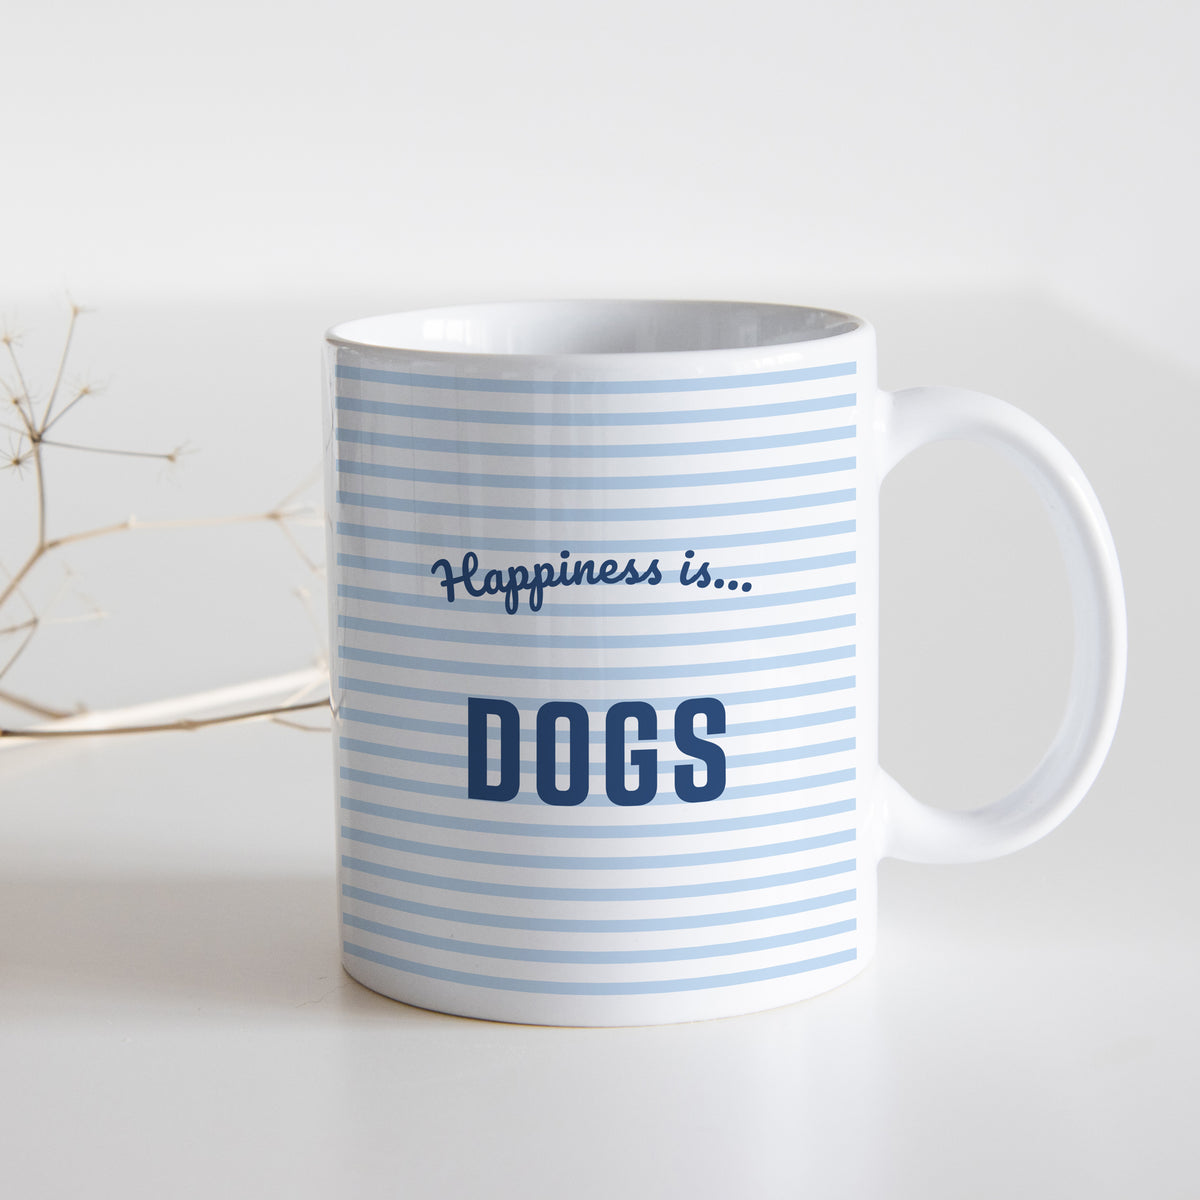 Mug: Dogs